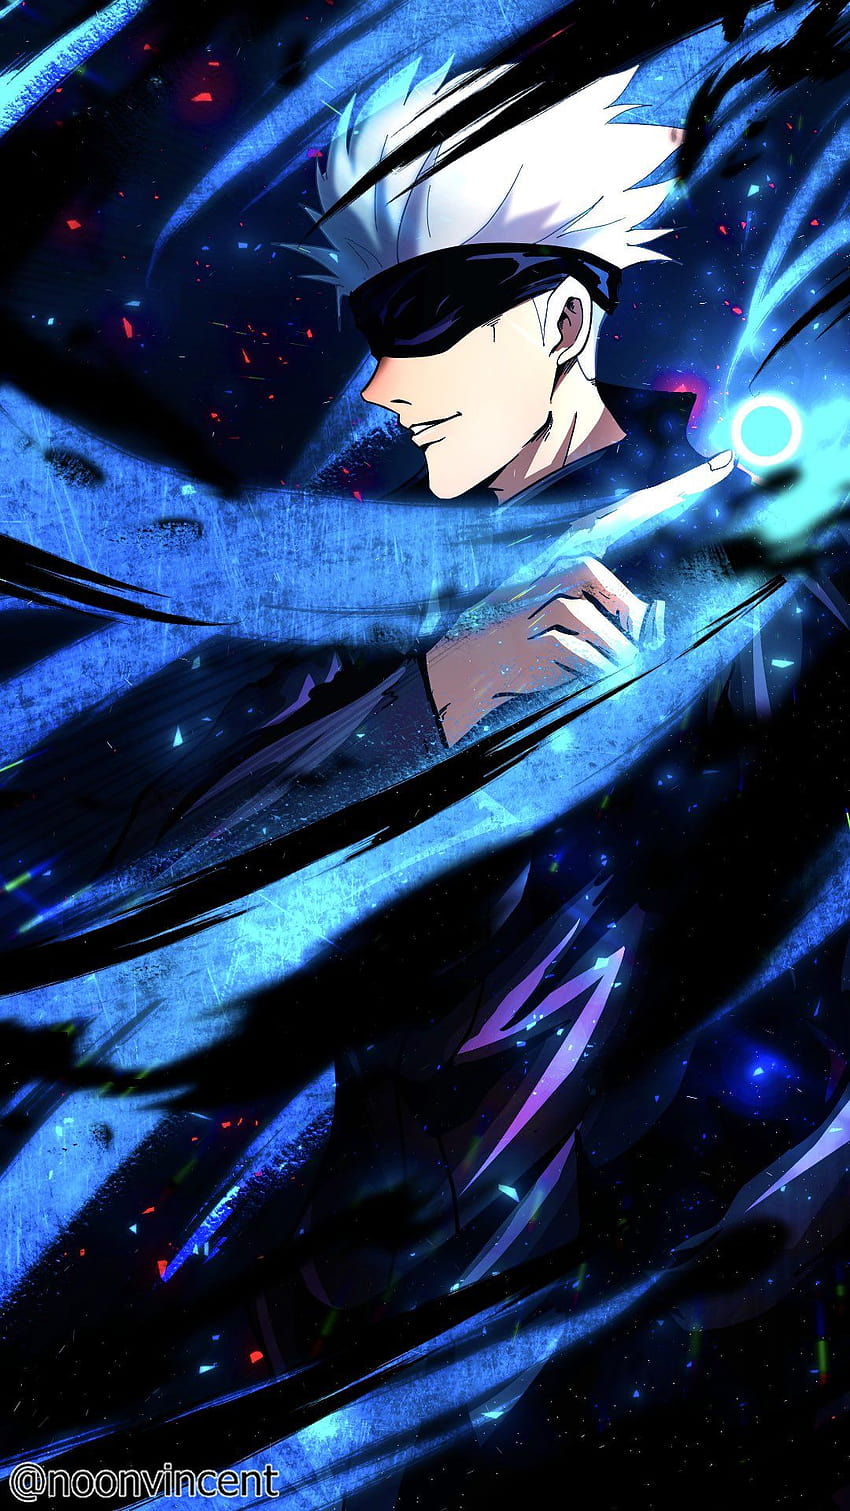 Hãy nhìn vào hình nền anime Gojo đầy màu sắc và kỳ ảo này để đắm chìm vào thế giới của nhân vật Gojo Satoru. Bạn sẽ cảm nhận được vẻ đẹp của các tính năng và sức mạnh của anh ấy chống lại các thế lực hắc ám.